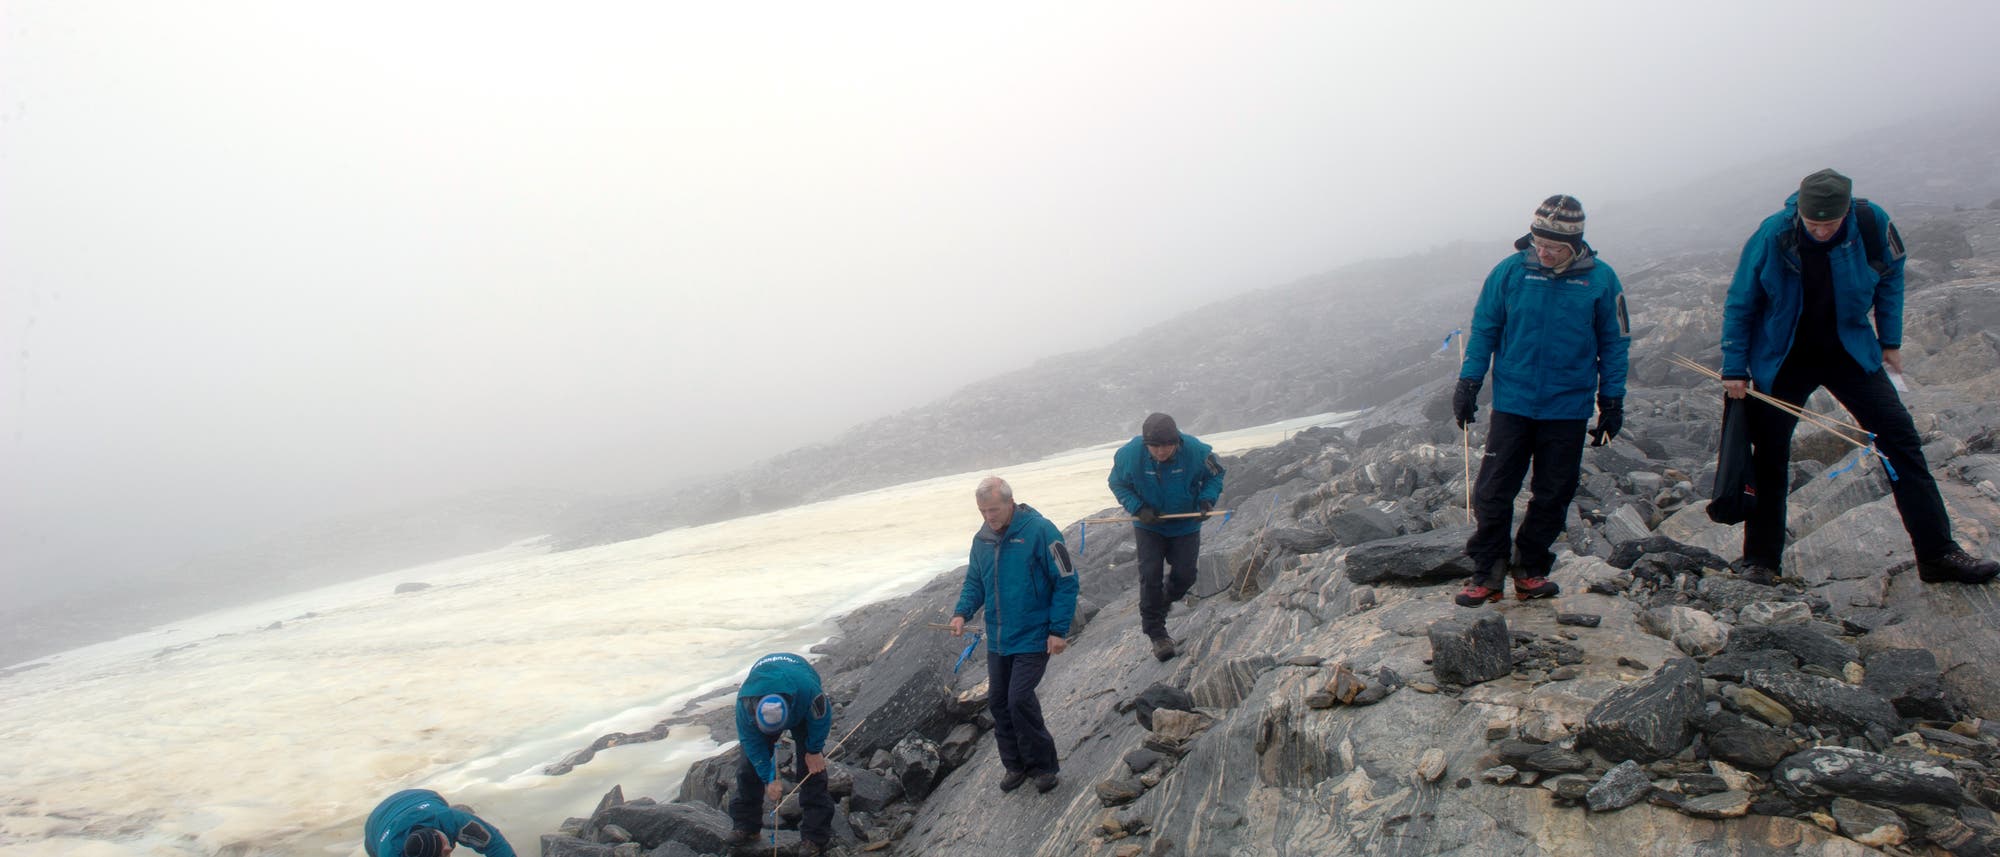 Gletscherarchäologen in Norwegen, die nach alten Funden entlang eines Eisflecks suchen